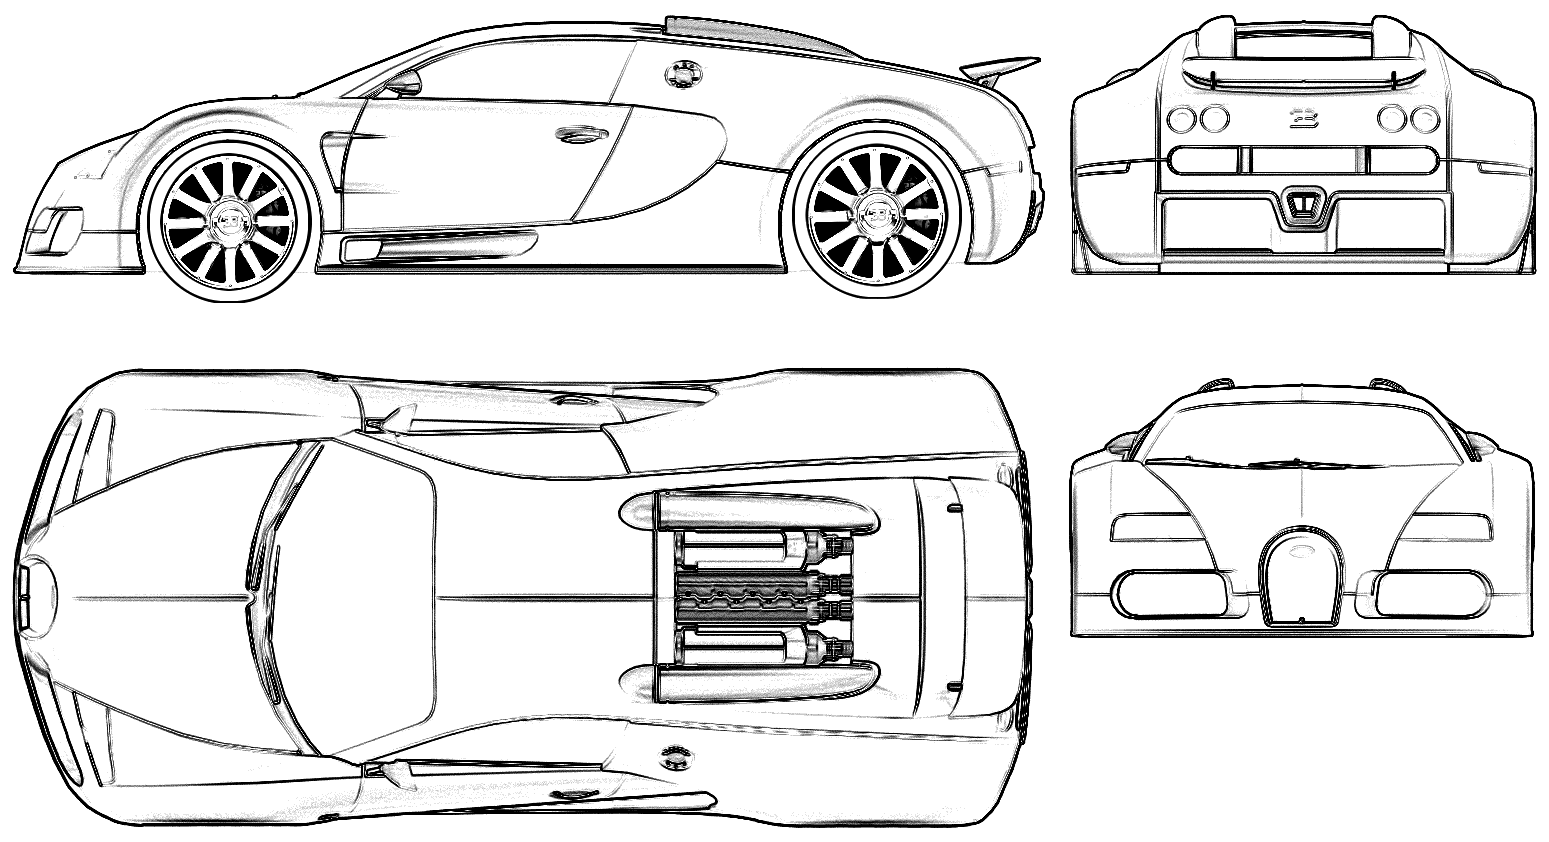 Karozza Bugatti 16-4 Veyron